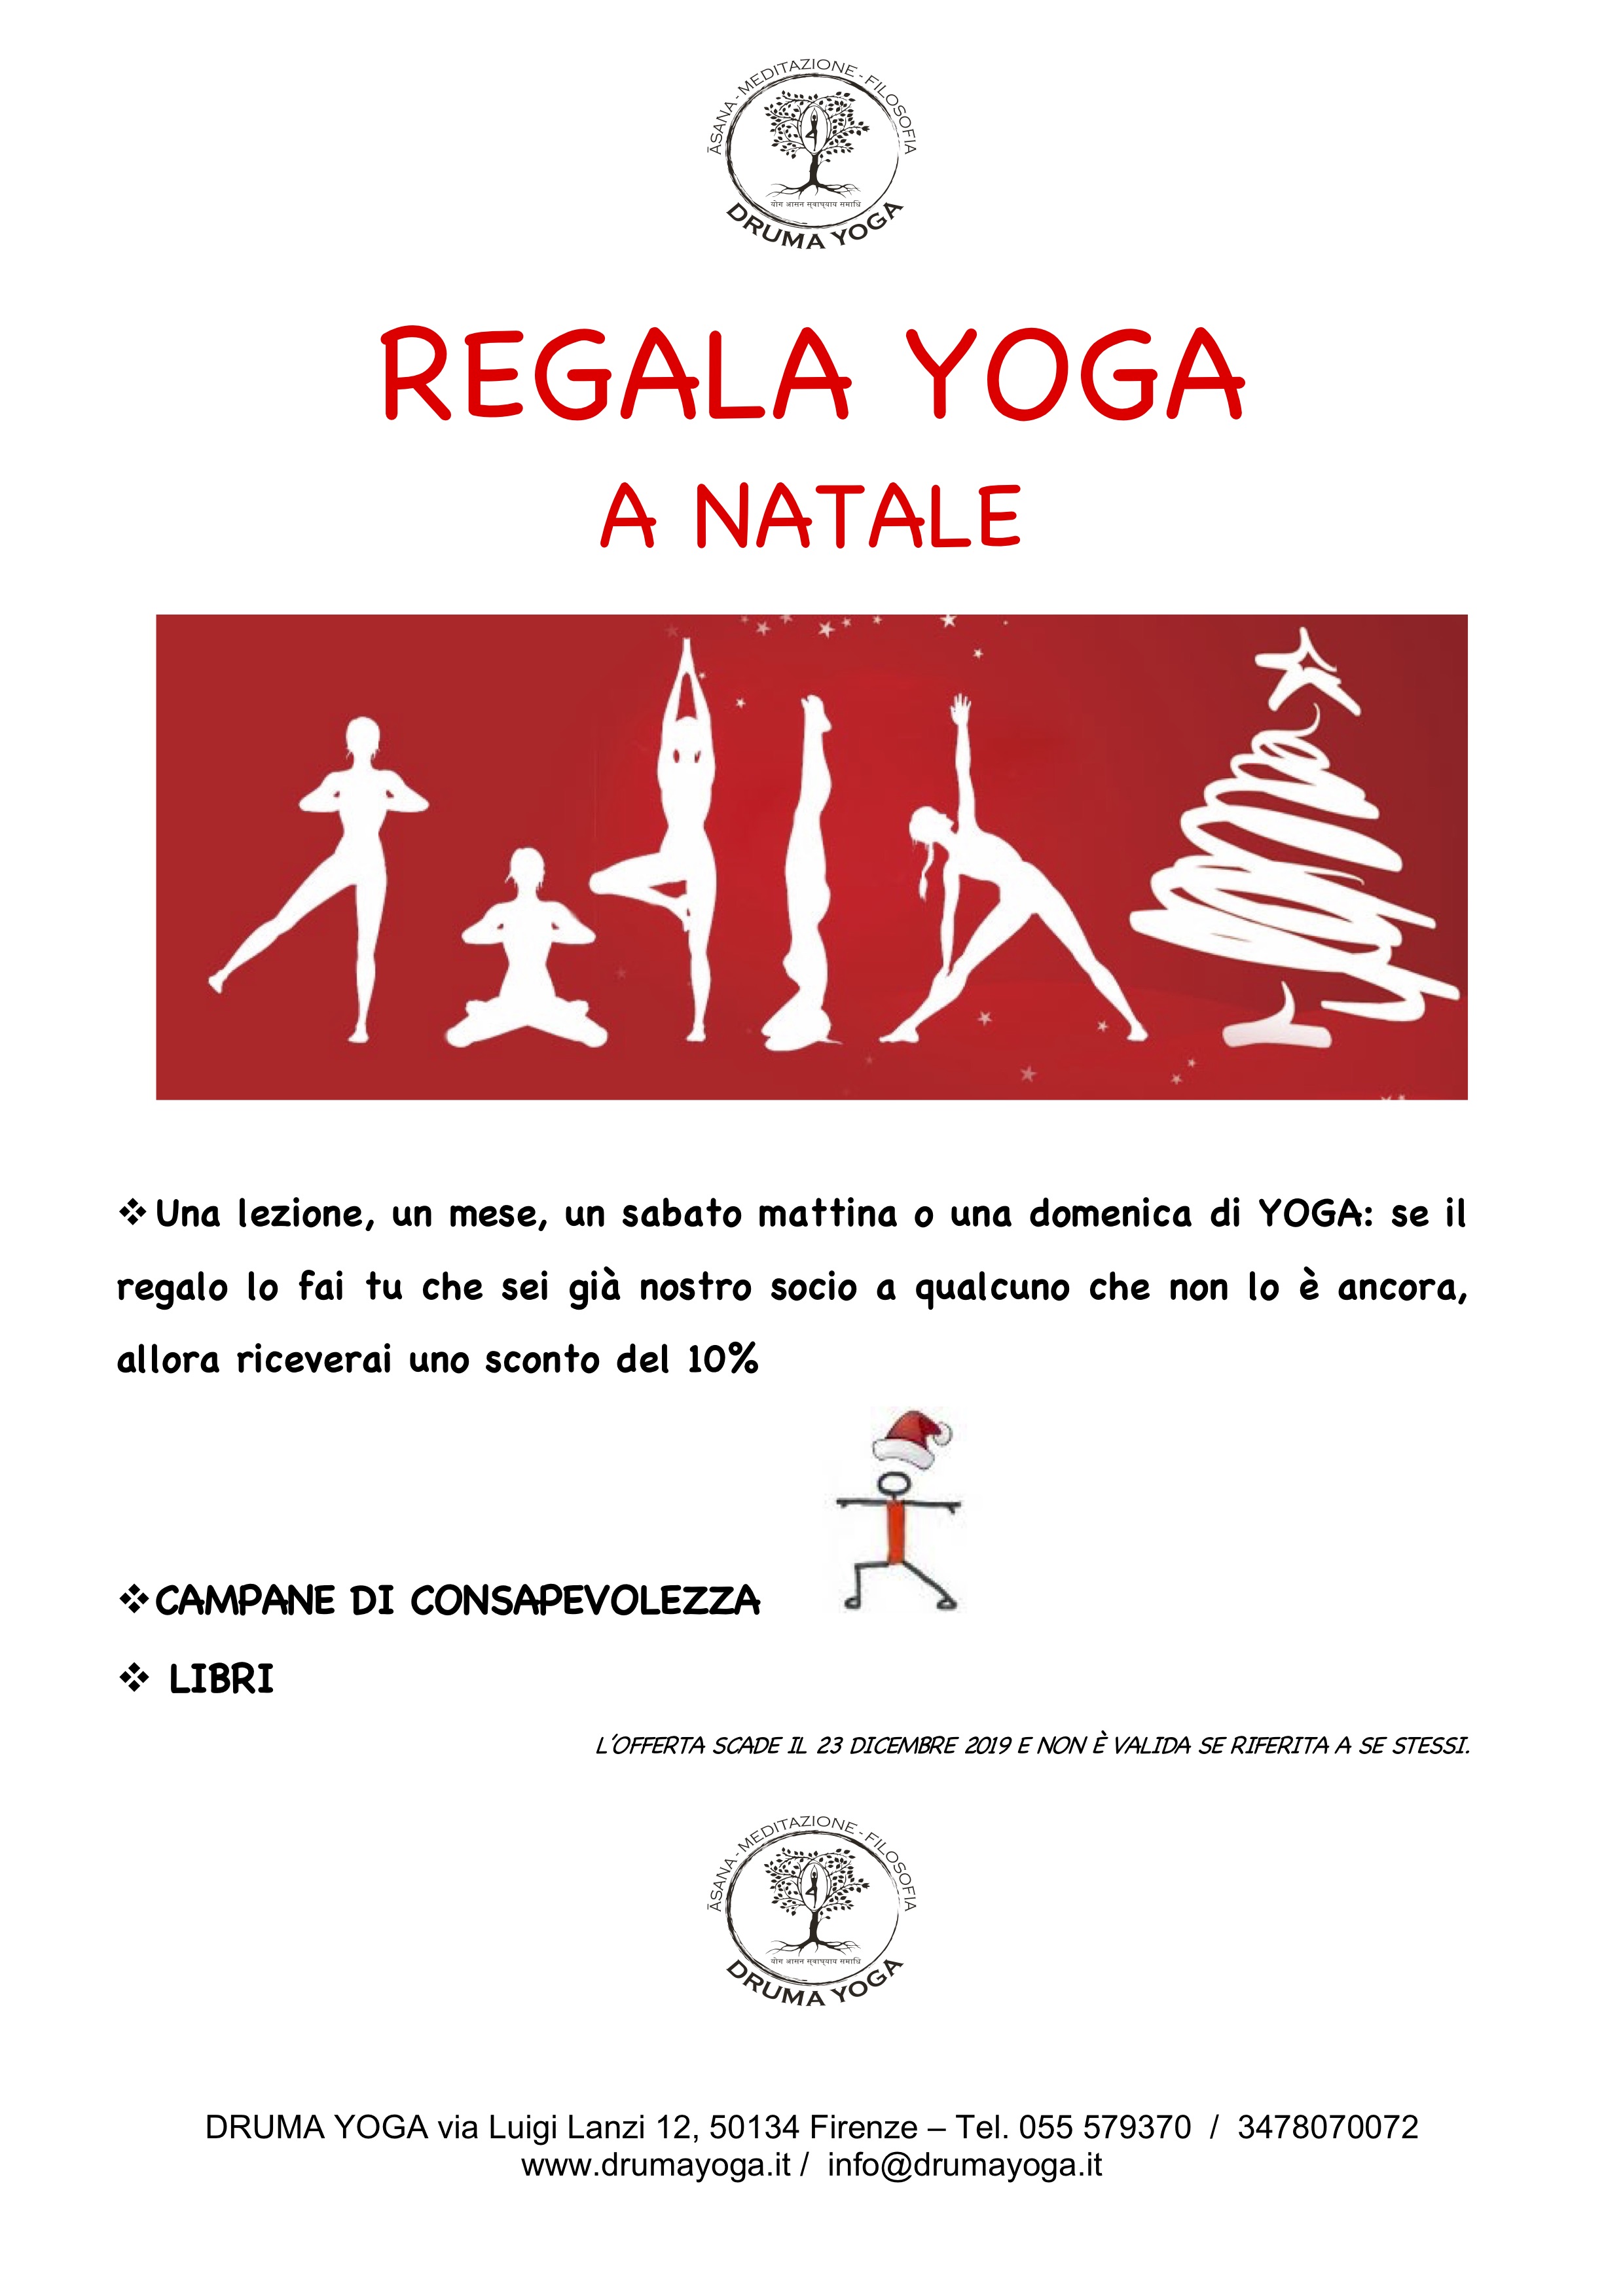 Immagini Natale Yoga.Regala Yoga Natale 2019